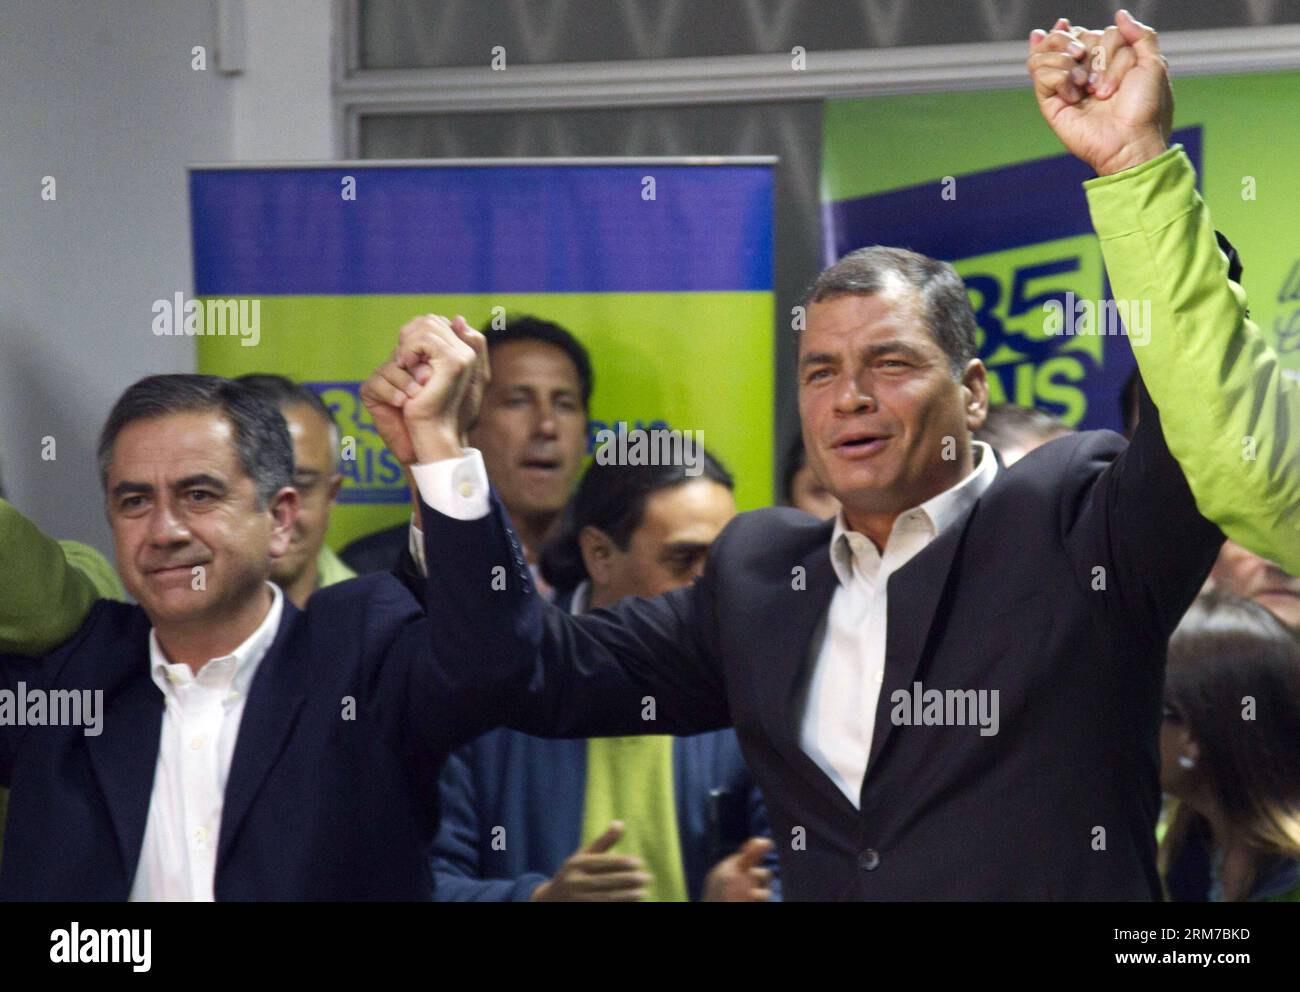 Il presidente dell'Ecuador Rafael Correa (R) e il candidato alla rielezione al sindaco di Quito, Augusto Barrera (L), reagiscono dopo aver ricevuto i risultati delle elezioni provinciali e comunali, presso la sede del partito Pais Alliance, nella città di Quito, capitale dell'Ecuador, il 23 febbraio, 2014. Secondo la stampa locale, il candidato dell'opposizione Mauricio Rodas vinse le elezioni per il sindaco di Quito. (Xinhua/Santiago Armas) (fnc) (ah) ECUADOR-QUITO-POLITICS-ELECTION PUBLICATIONxNOTxINxCHN il presidente dell'Ecuador Rafael Correa r e il candidato alla RIELEZIONE a Quito S mayo Foto Stock